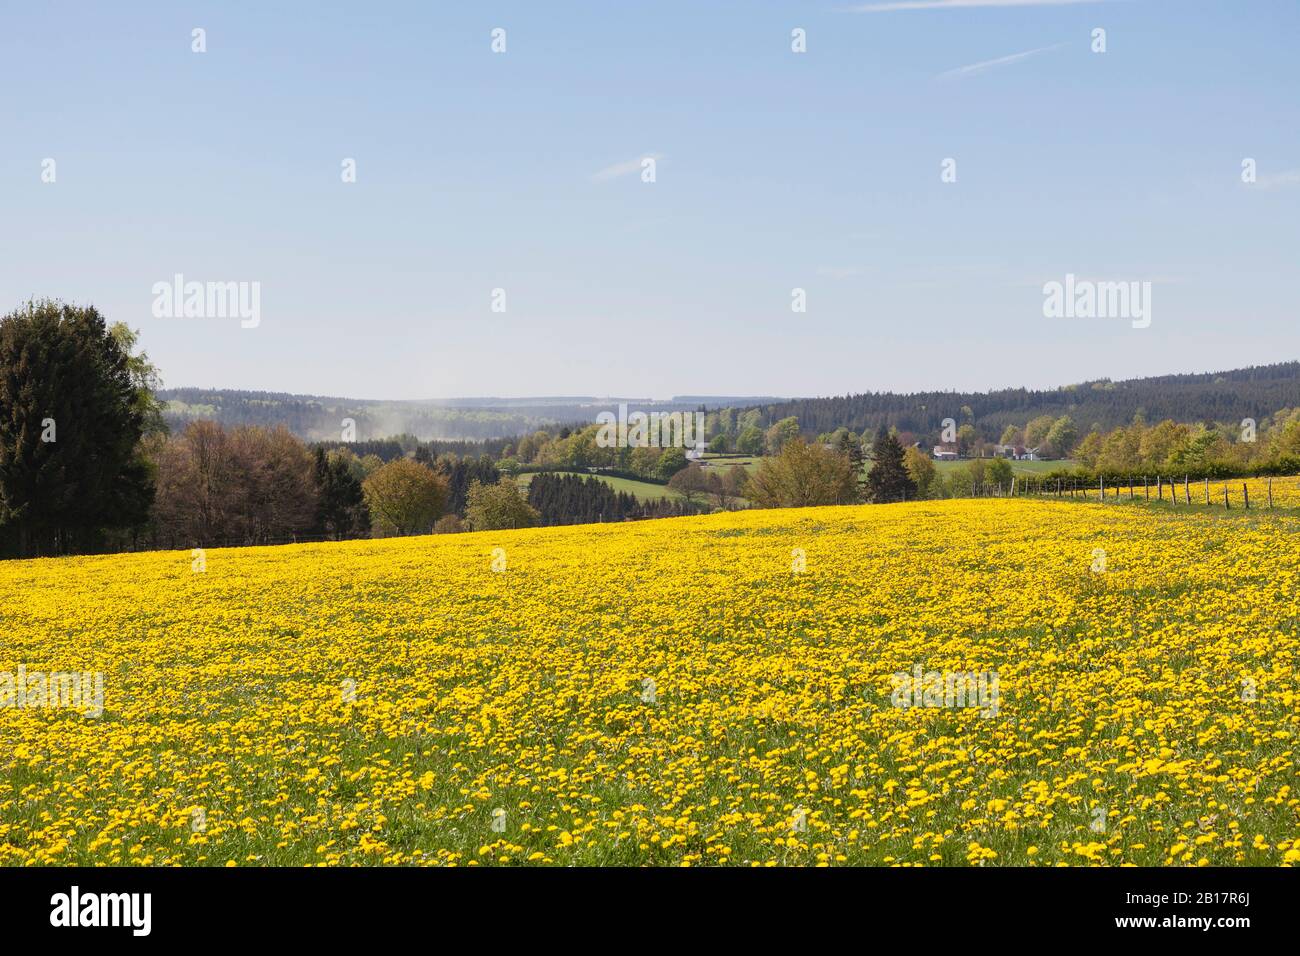 Germania, Renania Settentrionale Westfalia, Eifel, regione di Kalterherberg, Dandelions comuni (Taraxacum sect. Ruderalia) che crescono in campi erbosi in primavera Foto Stock